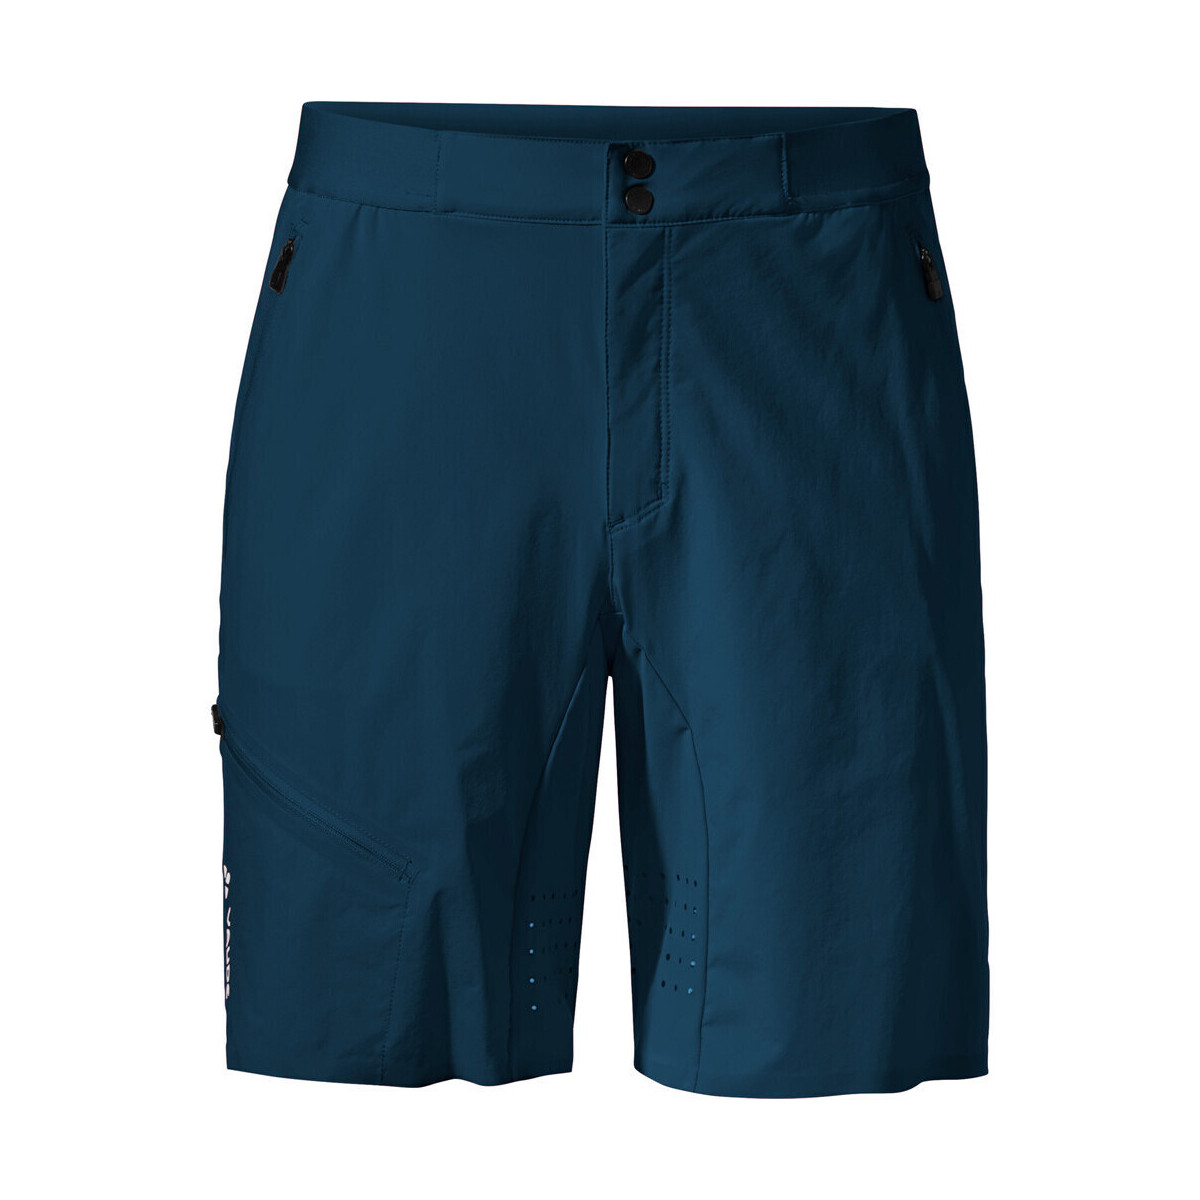 Vêtements Homme Pantalons de survêtement Vaude Men's Scopi LW Shorts II Marine